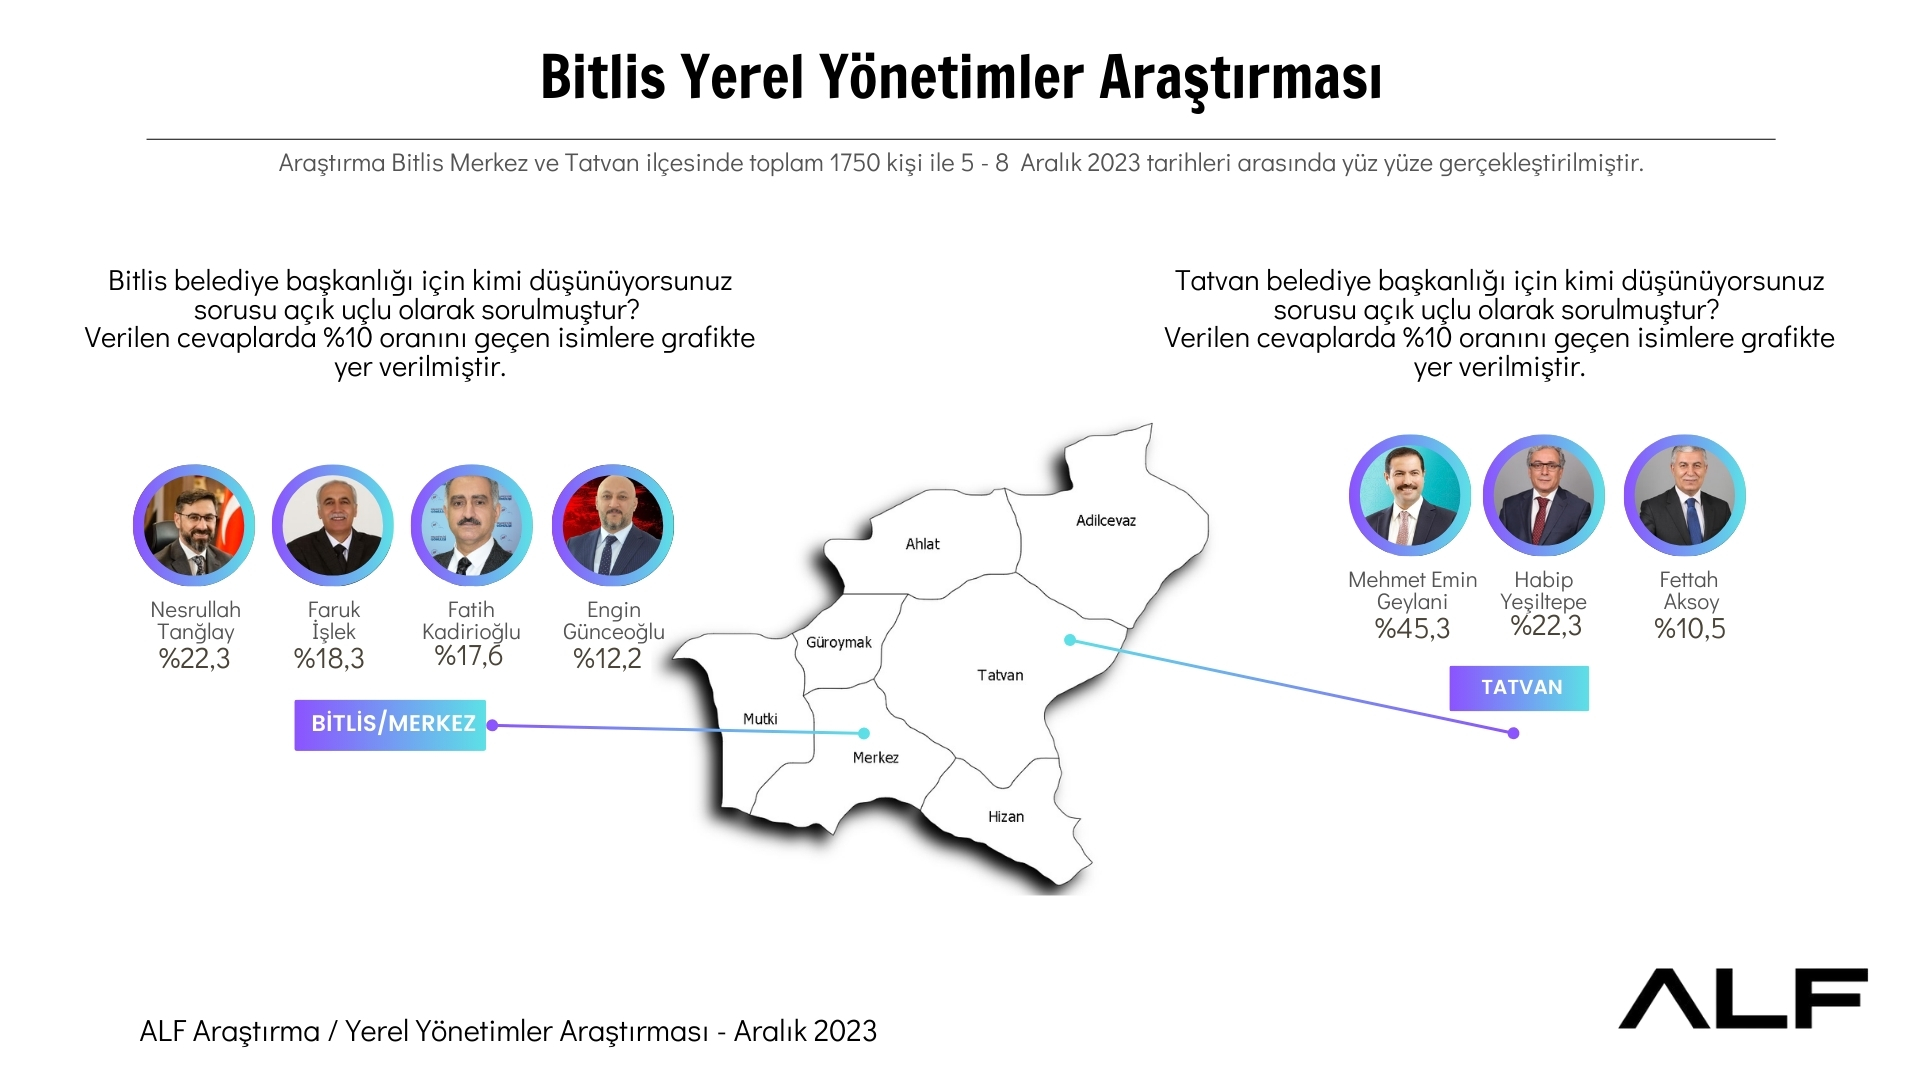 Bitlis Yerel Yönetimler Araştırma Sonuçları Belli Oldu 